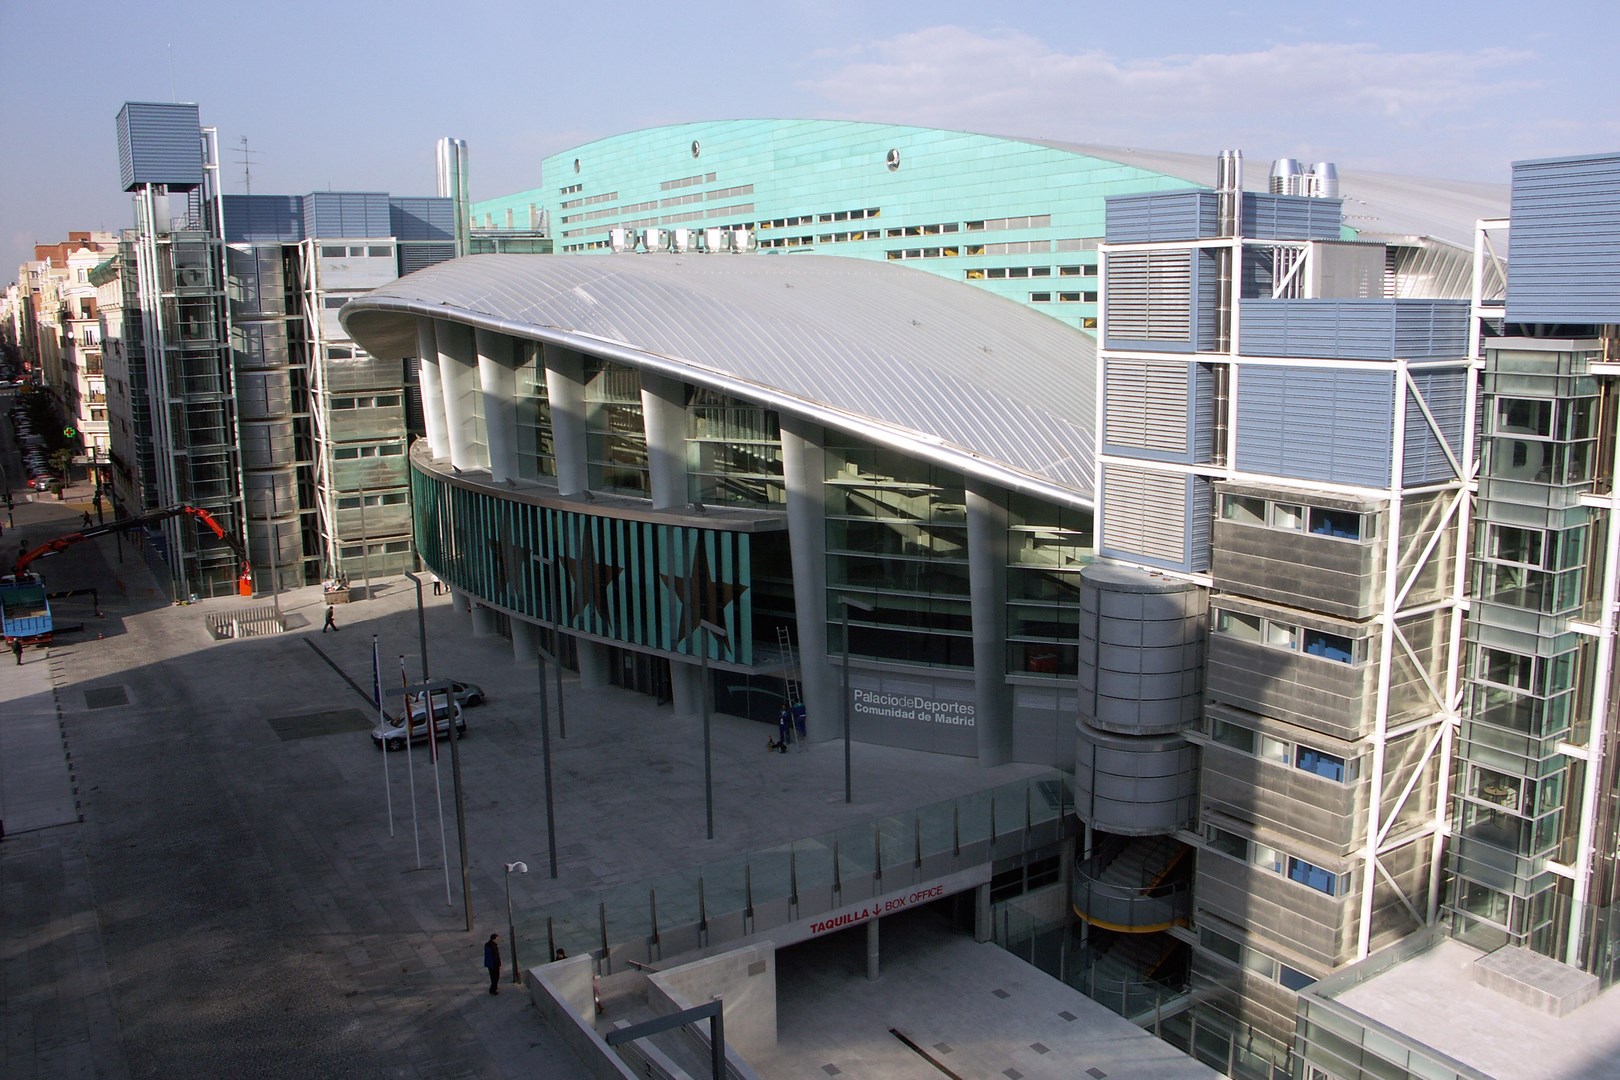 Palacio Deportes Comunidad de Madrid